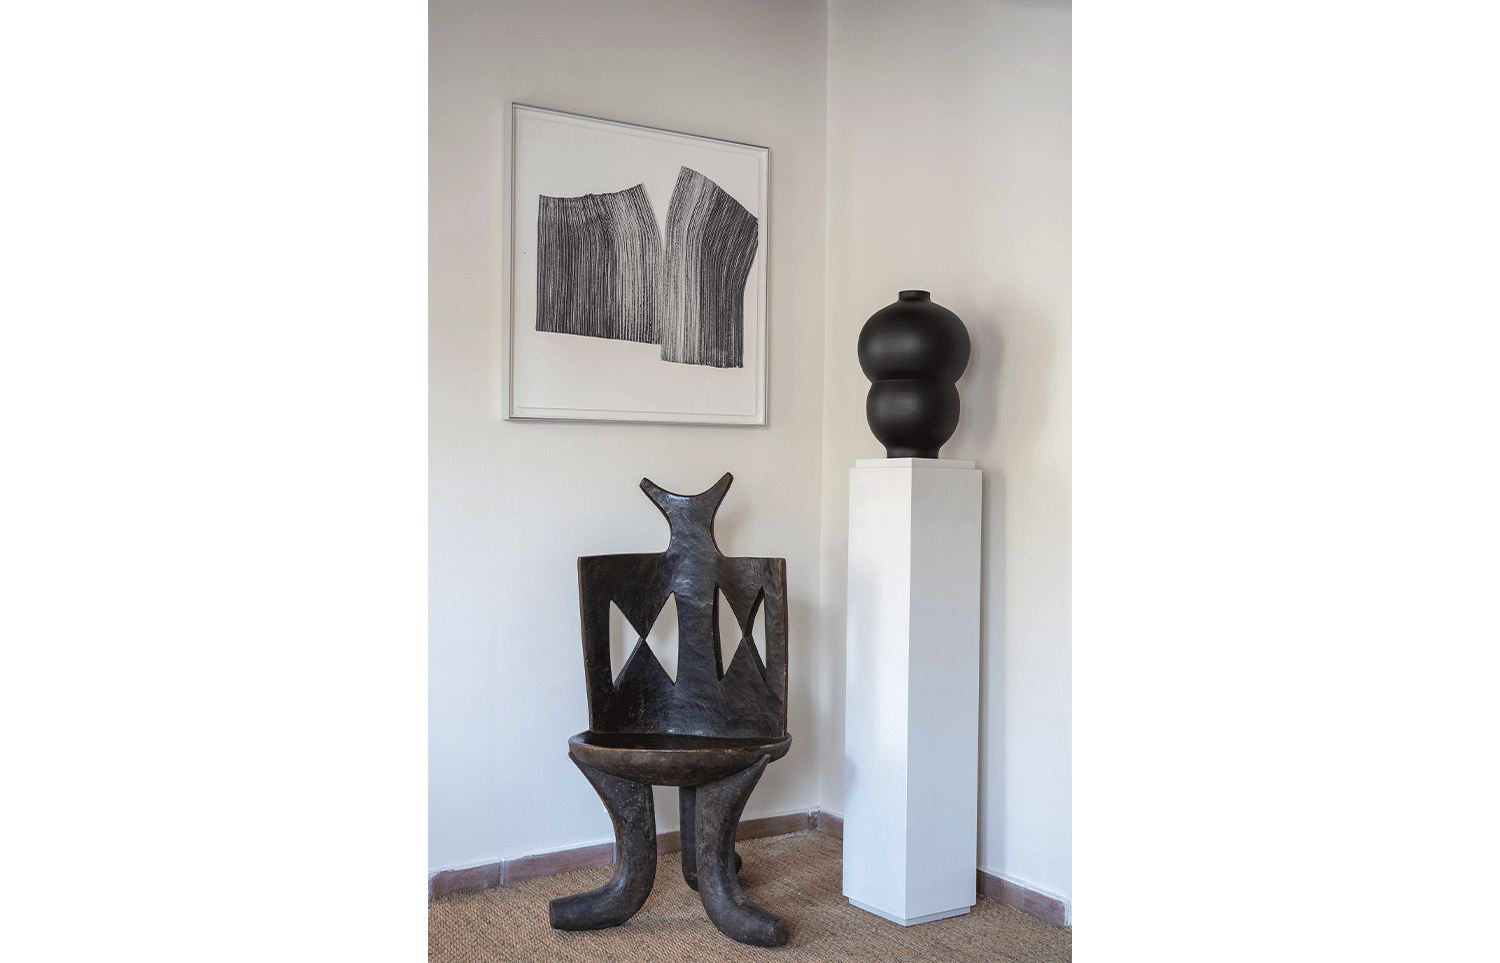 Alessandro Mendini - Lucas Ratton x kamel mennour x Galerie kreo x Jacques Lacoste @Saint-Tropez